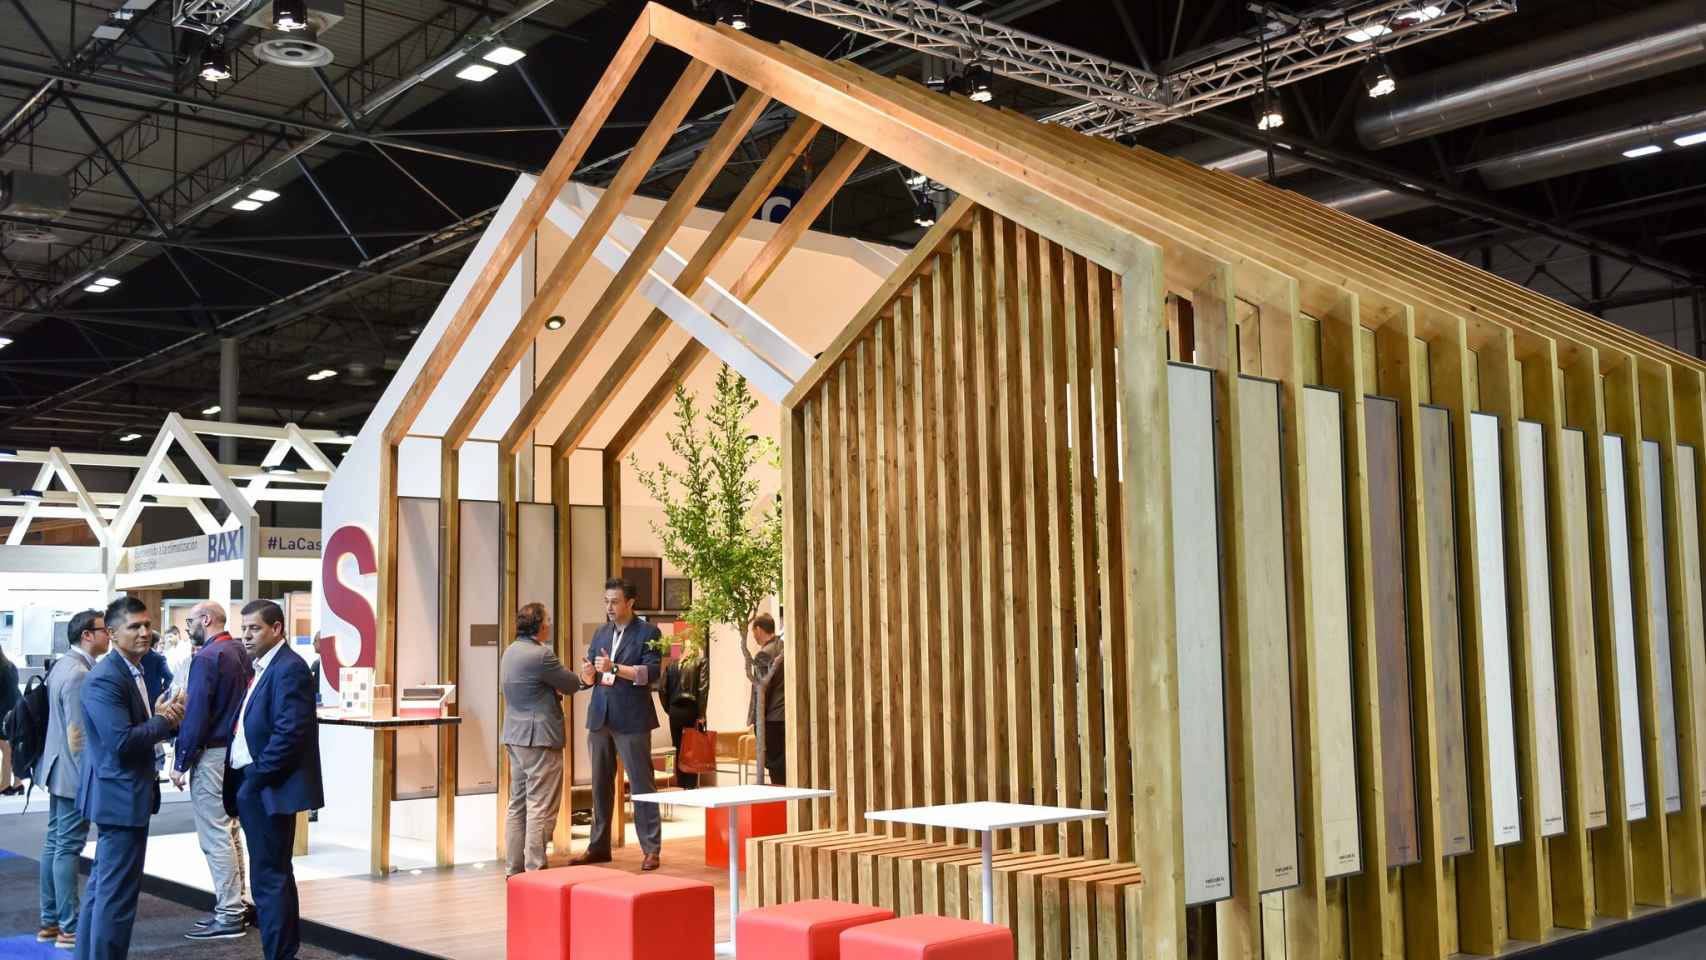 Construir en madera para descarbonizar la edificación, protagonista en Rebuild.